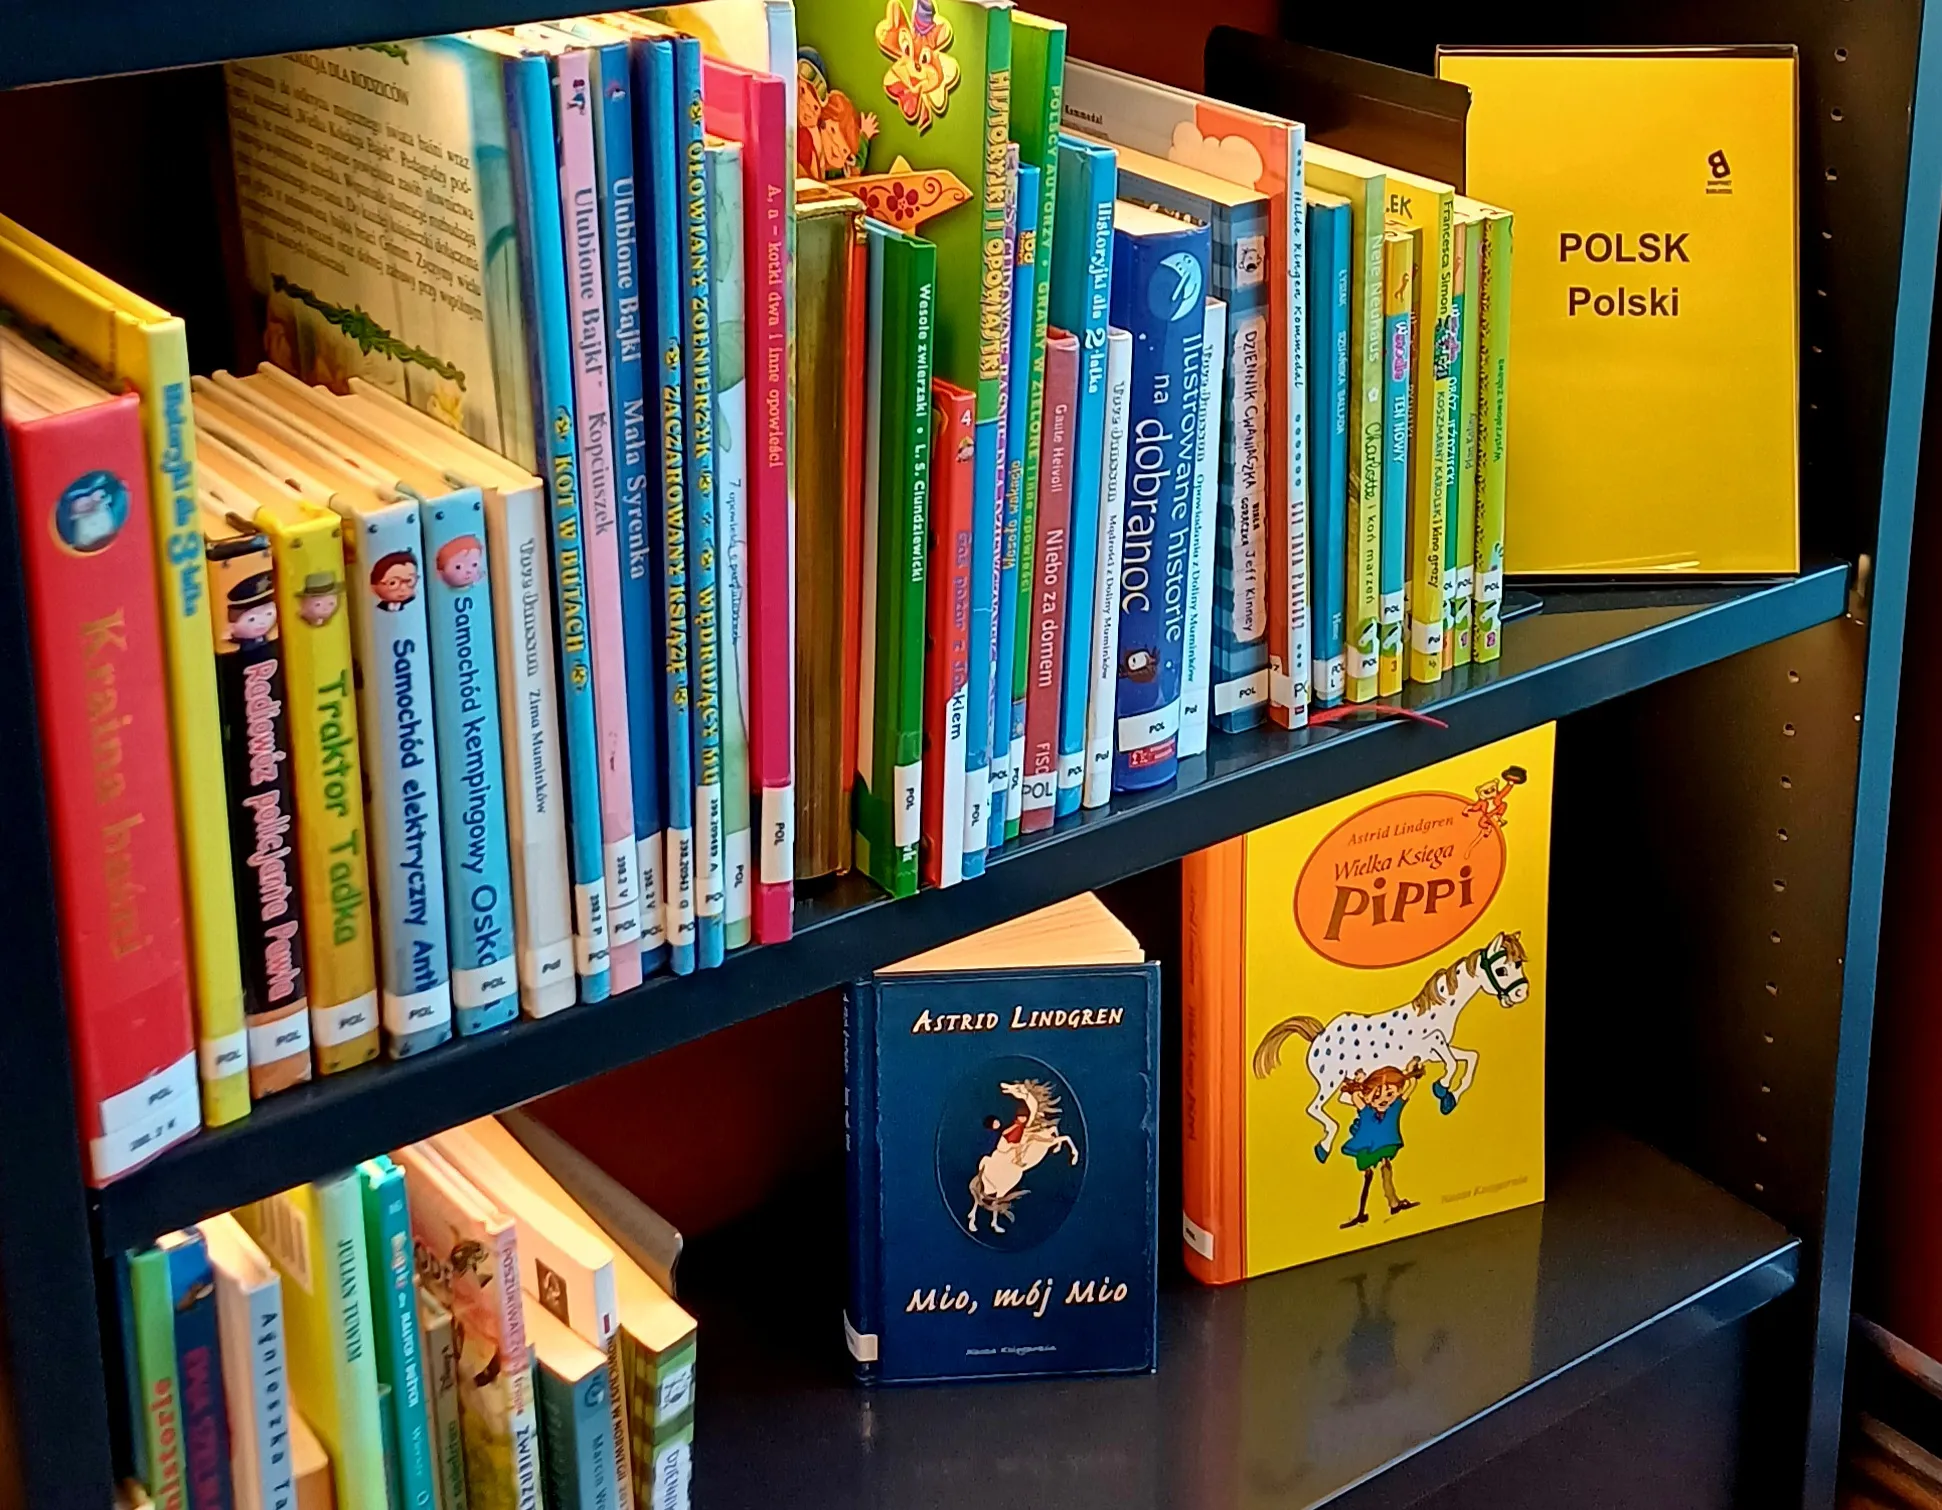 Knygos lenkų kalba Norvegijos bibliotekoje: daugiakalbė biblioteka, prieinama visiems